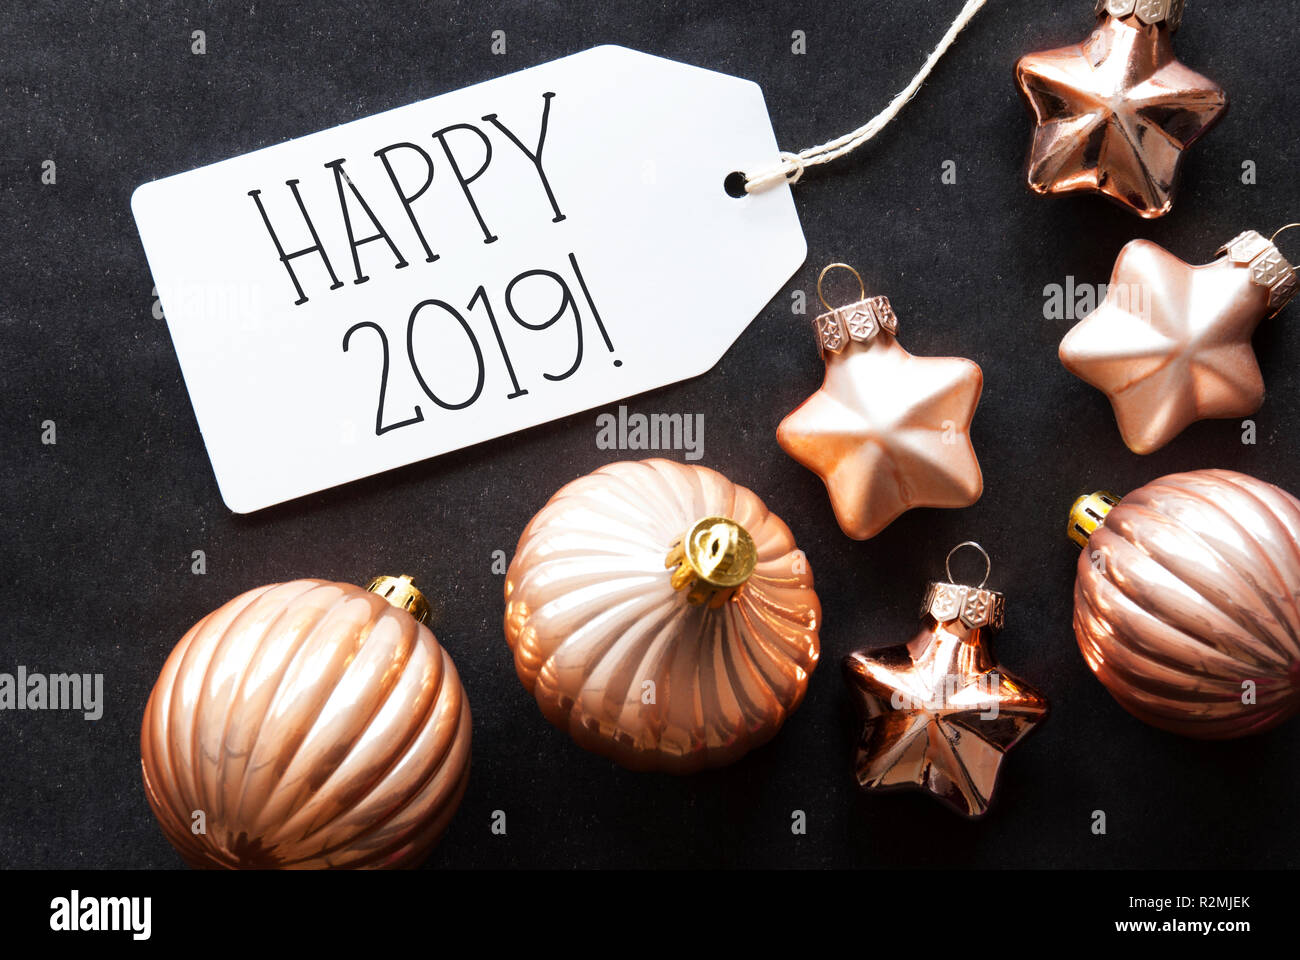 Stella Di Natale In Inglese.Il Bronzo Albero Di Natale Sfere Testo Inglese Happy 2019 Foto Stock Alamy